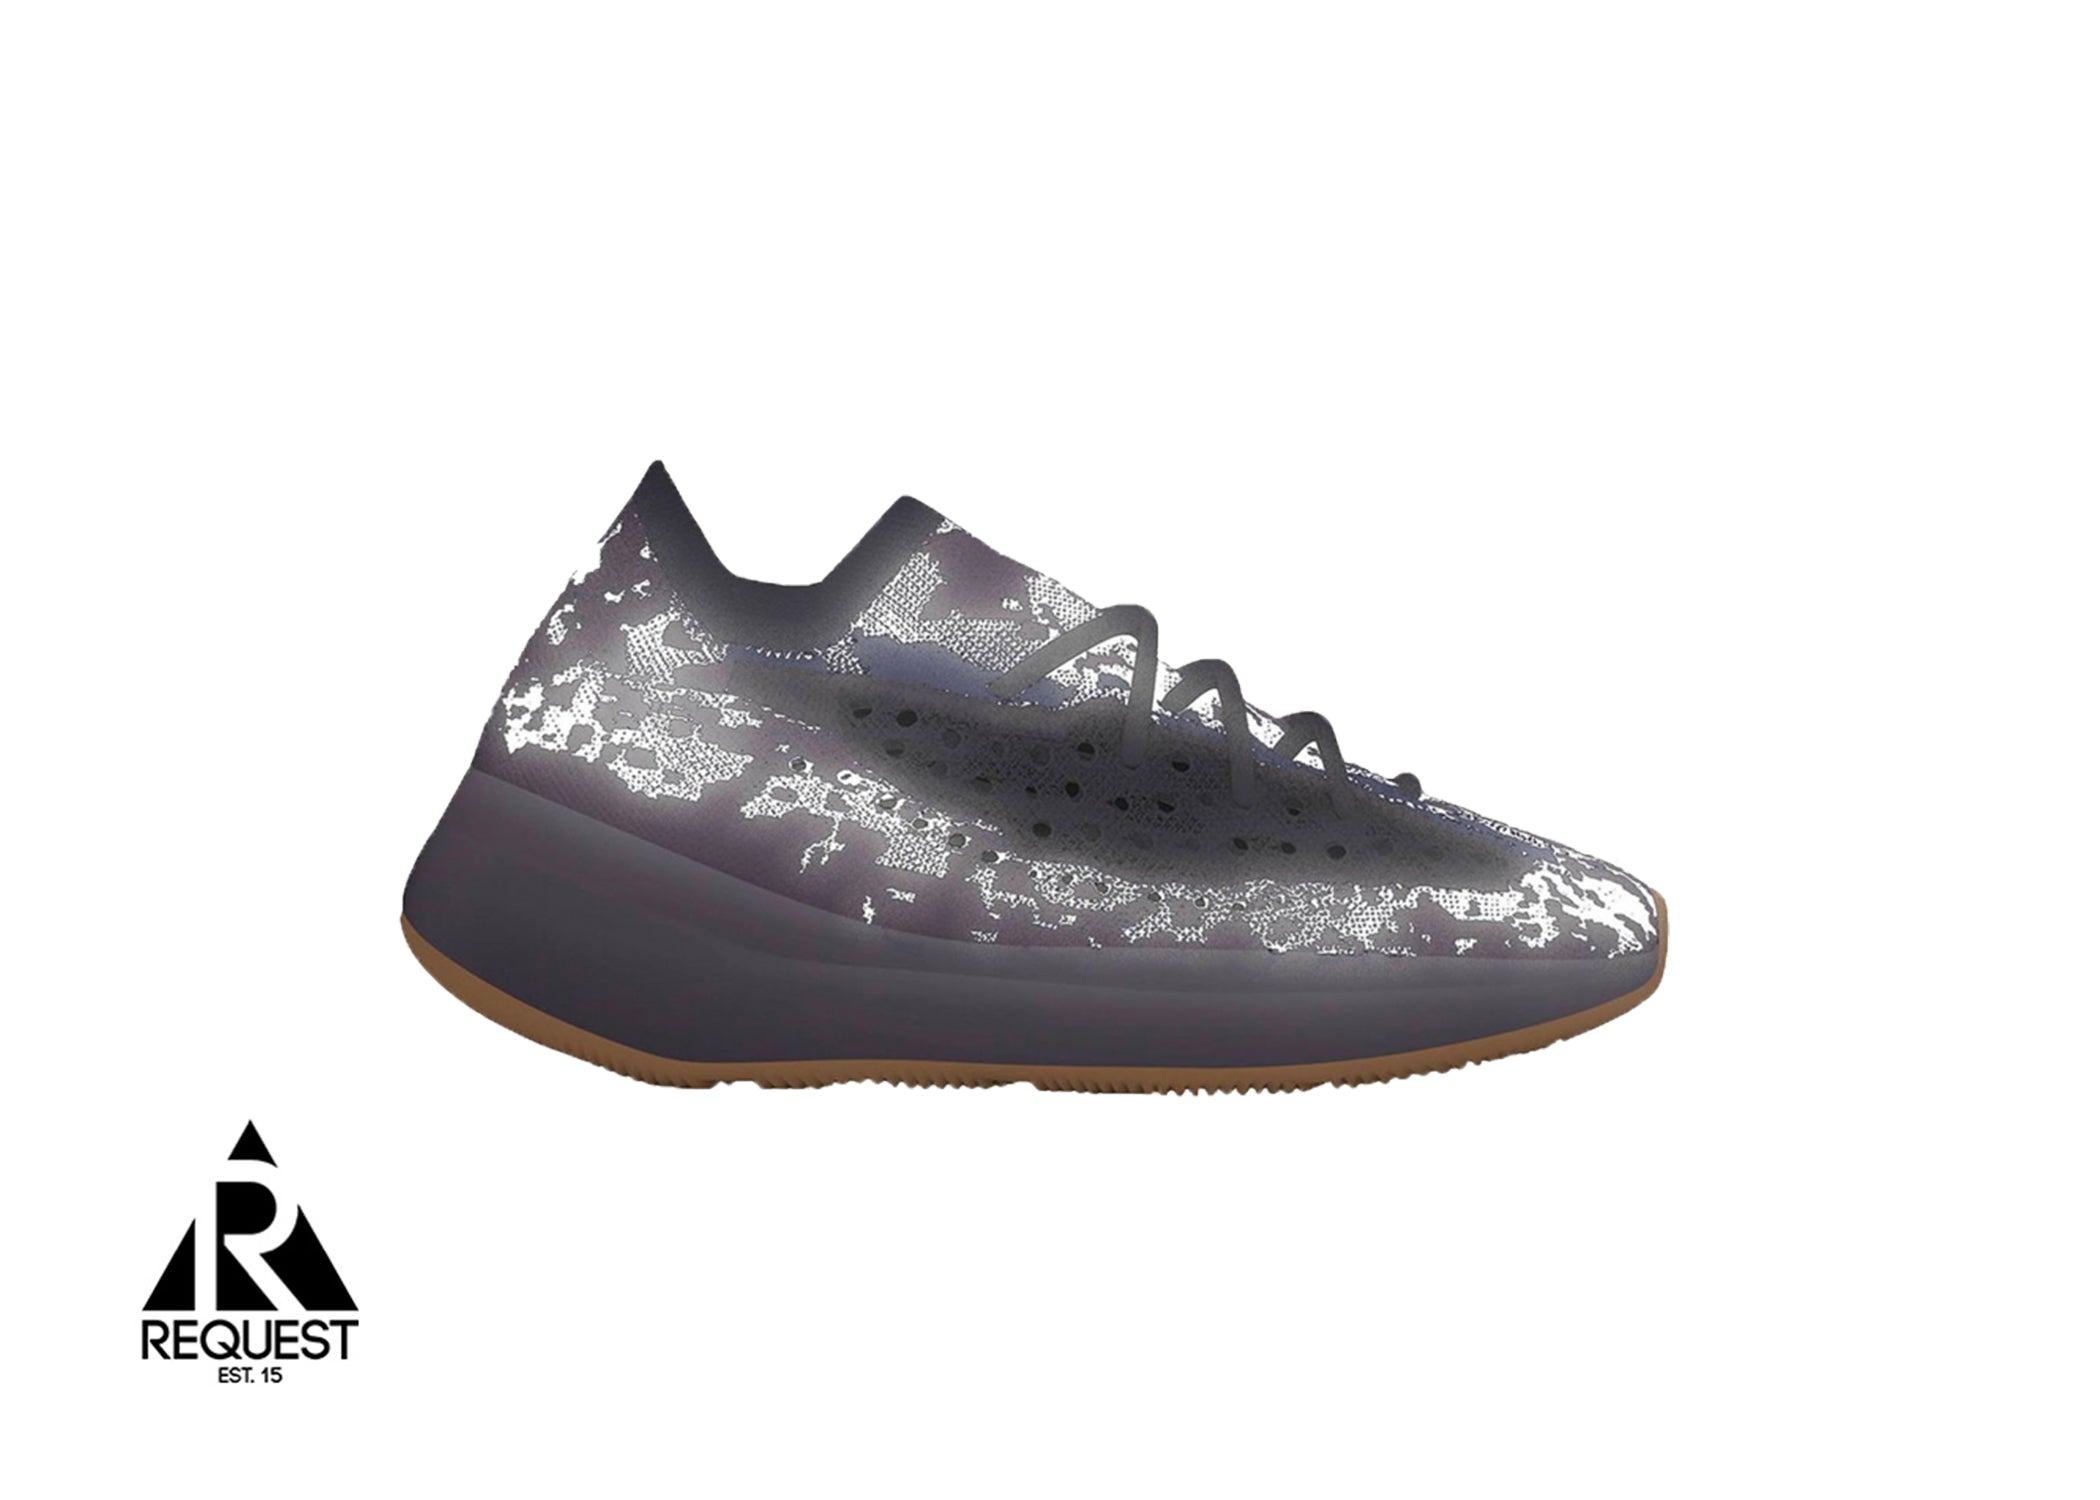 Adidas Yeezy Boost 380 “Onyx Reflective”